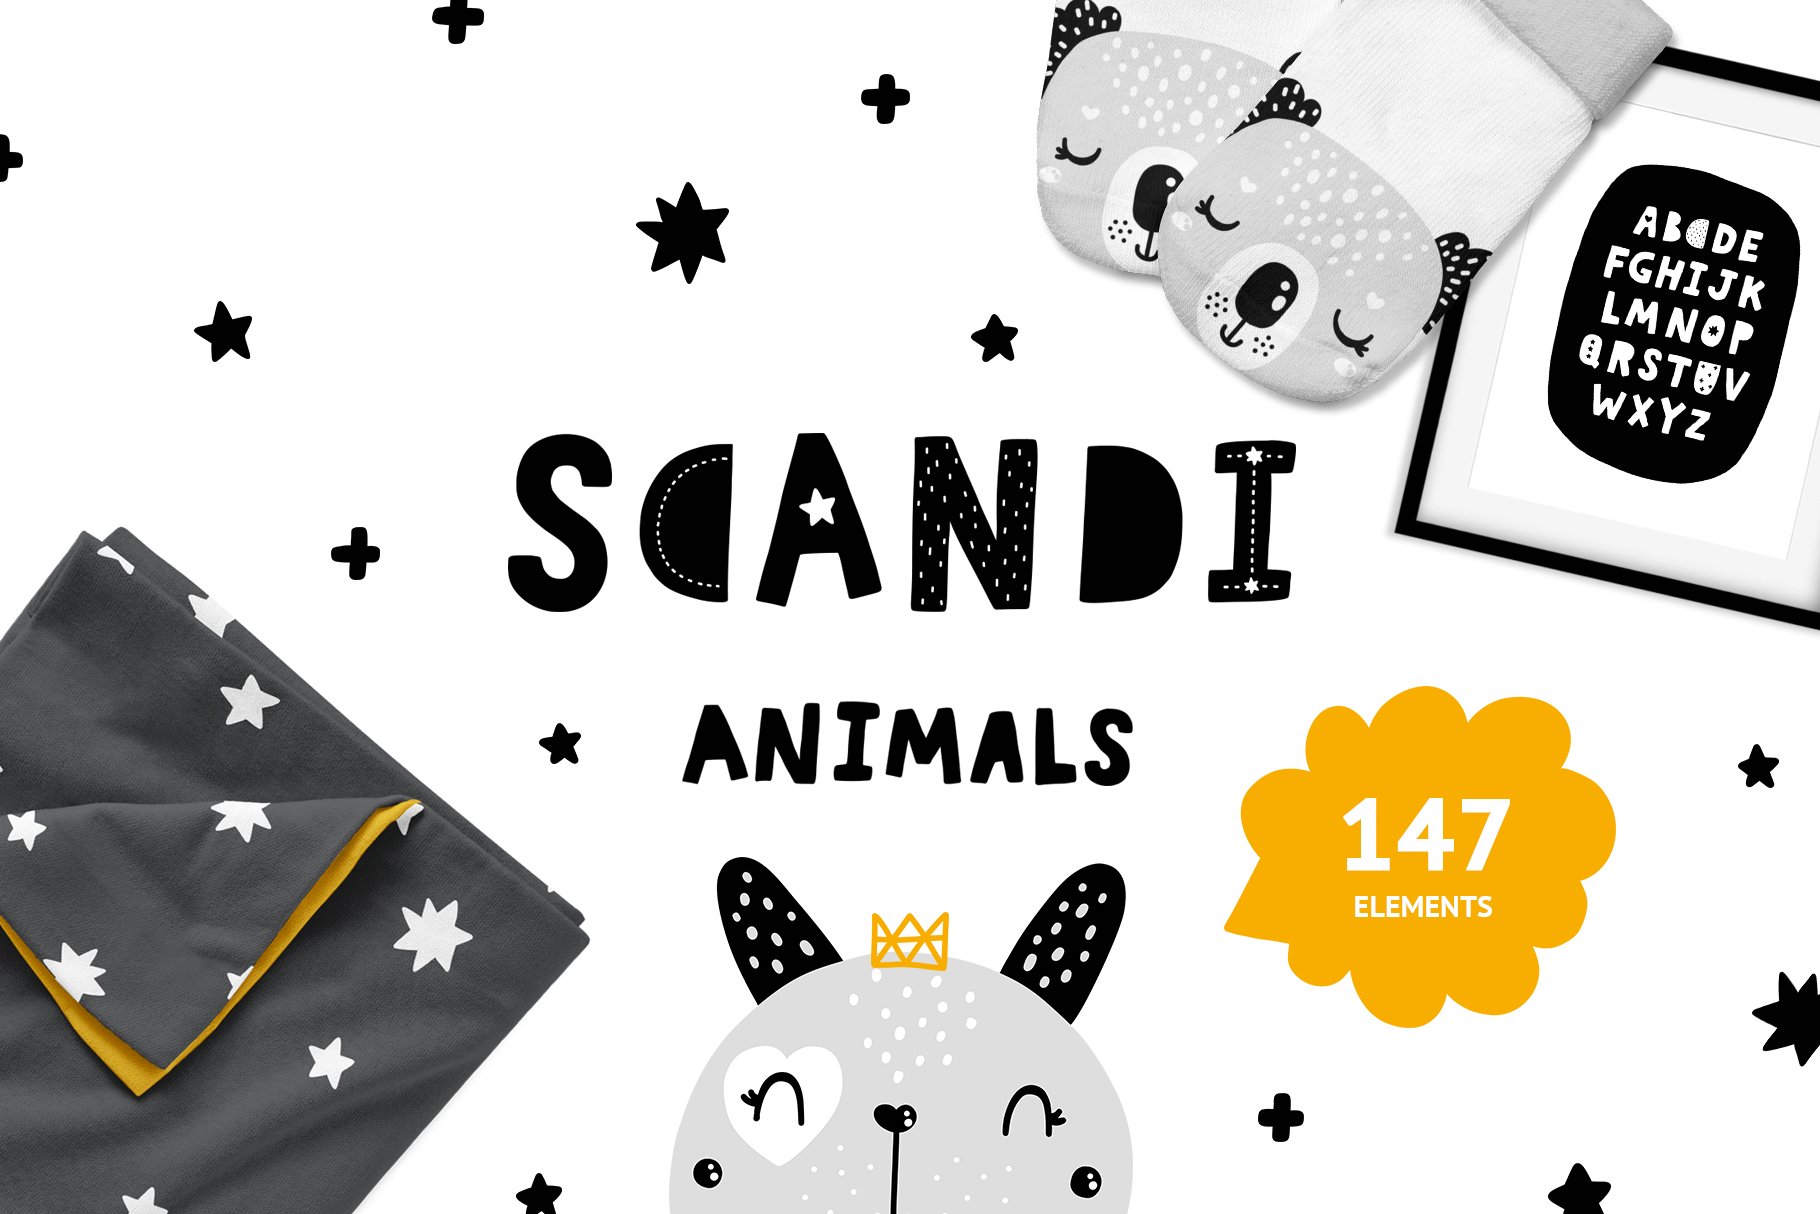 scandi_animals_tatiletters-